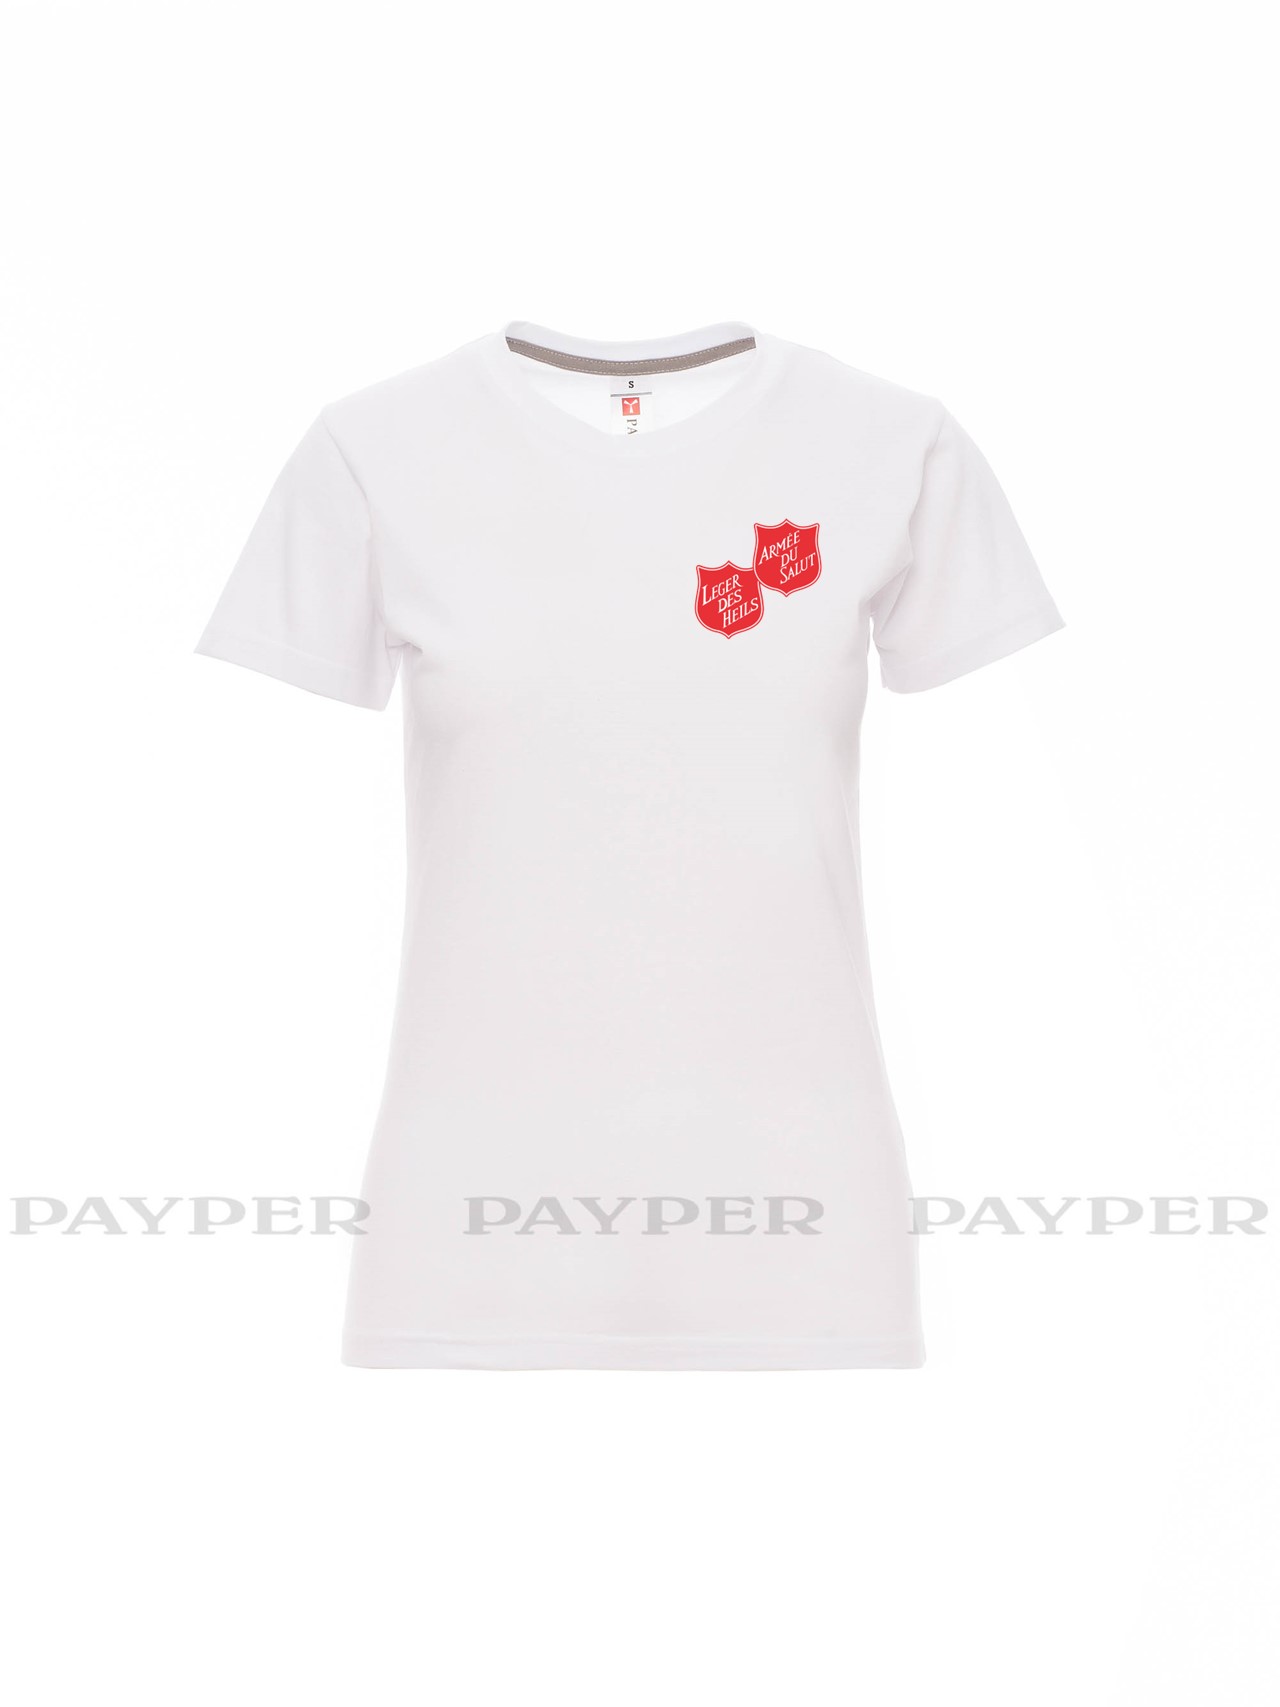 T-shirt femme blanc avec logo serigraphié